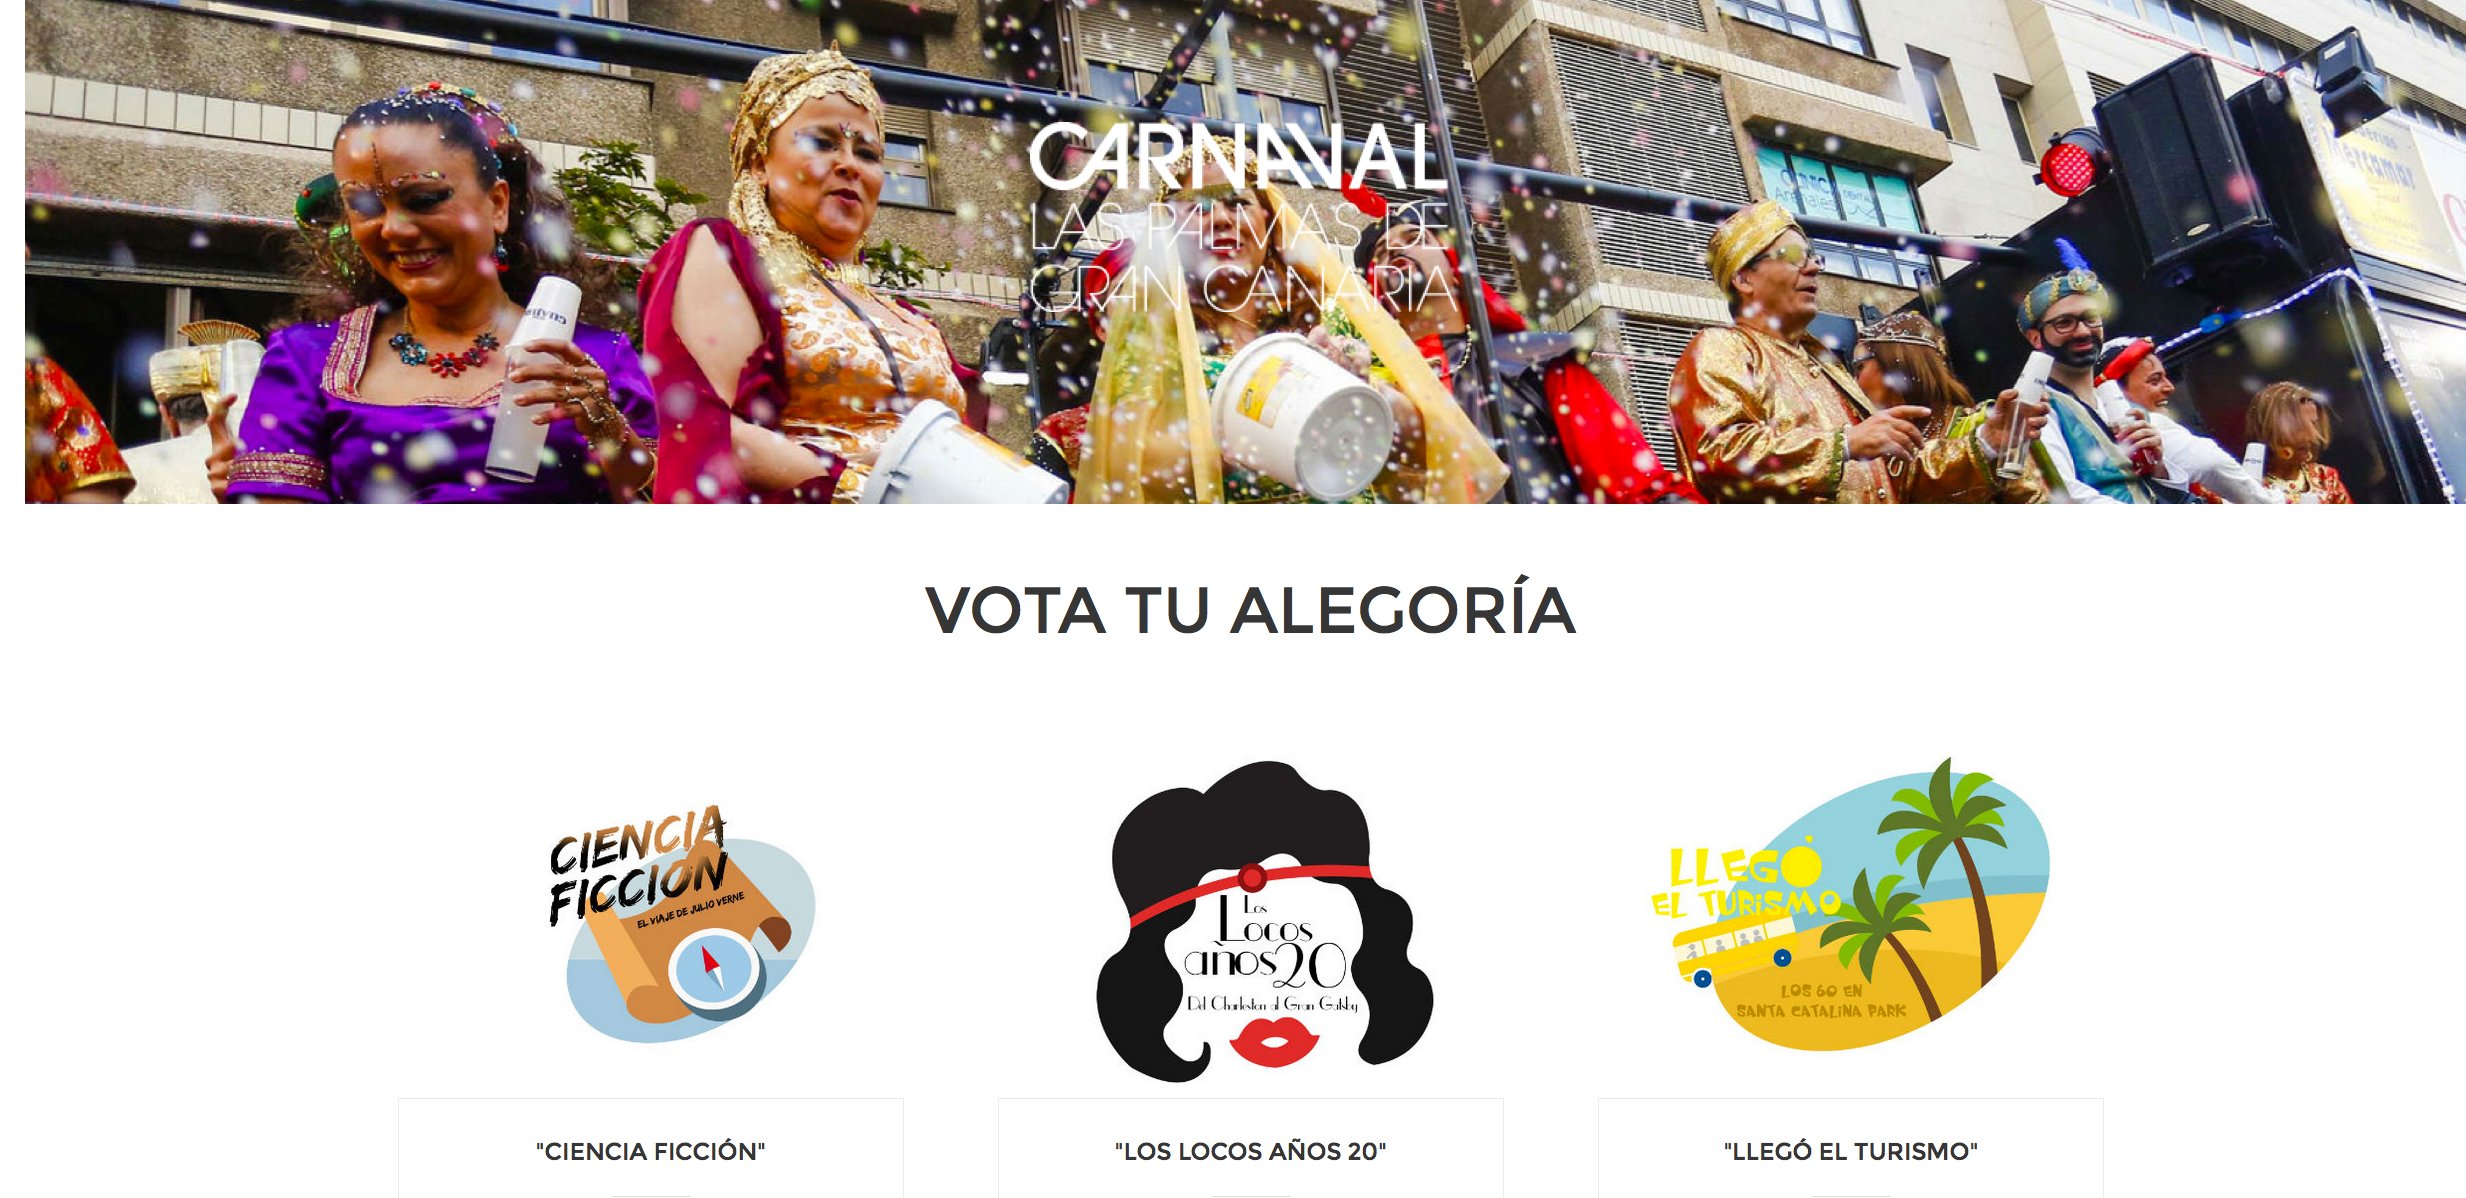 La web en donde puedes votar por la alegoría del Carnaval suma 3.808 votos en 72 horas